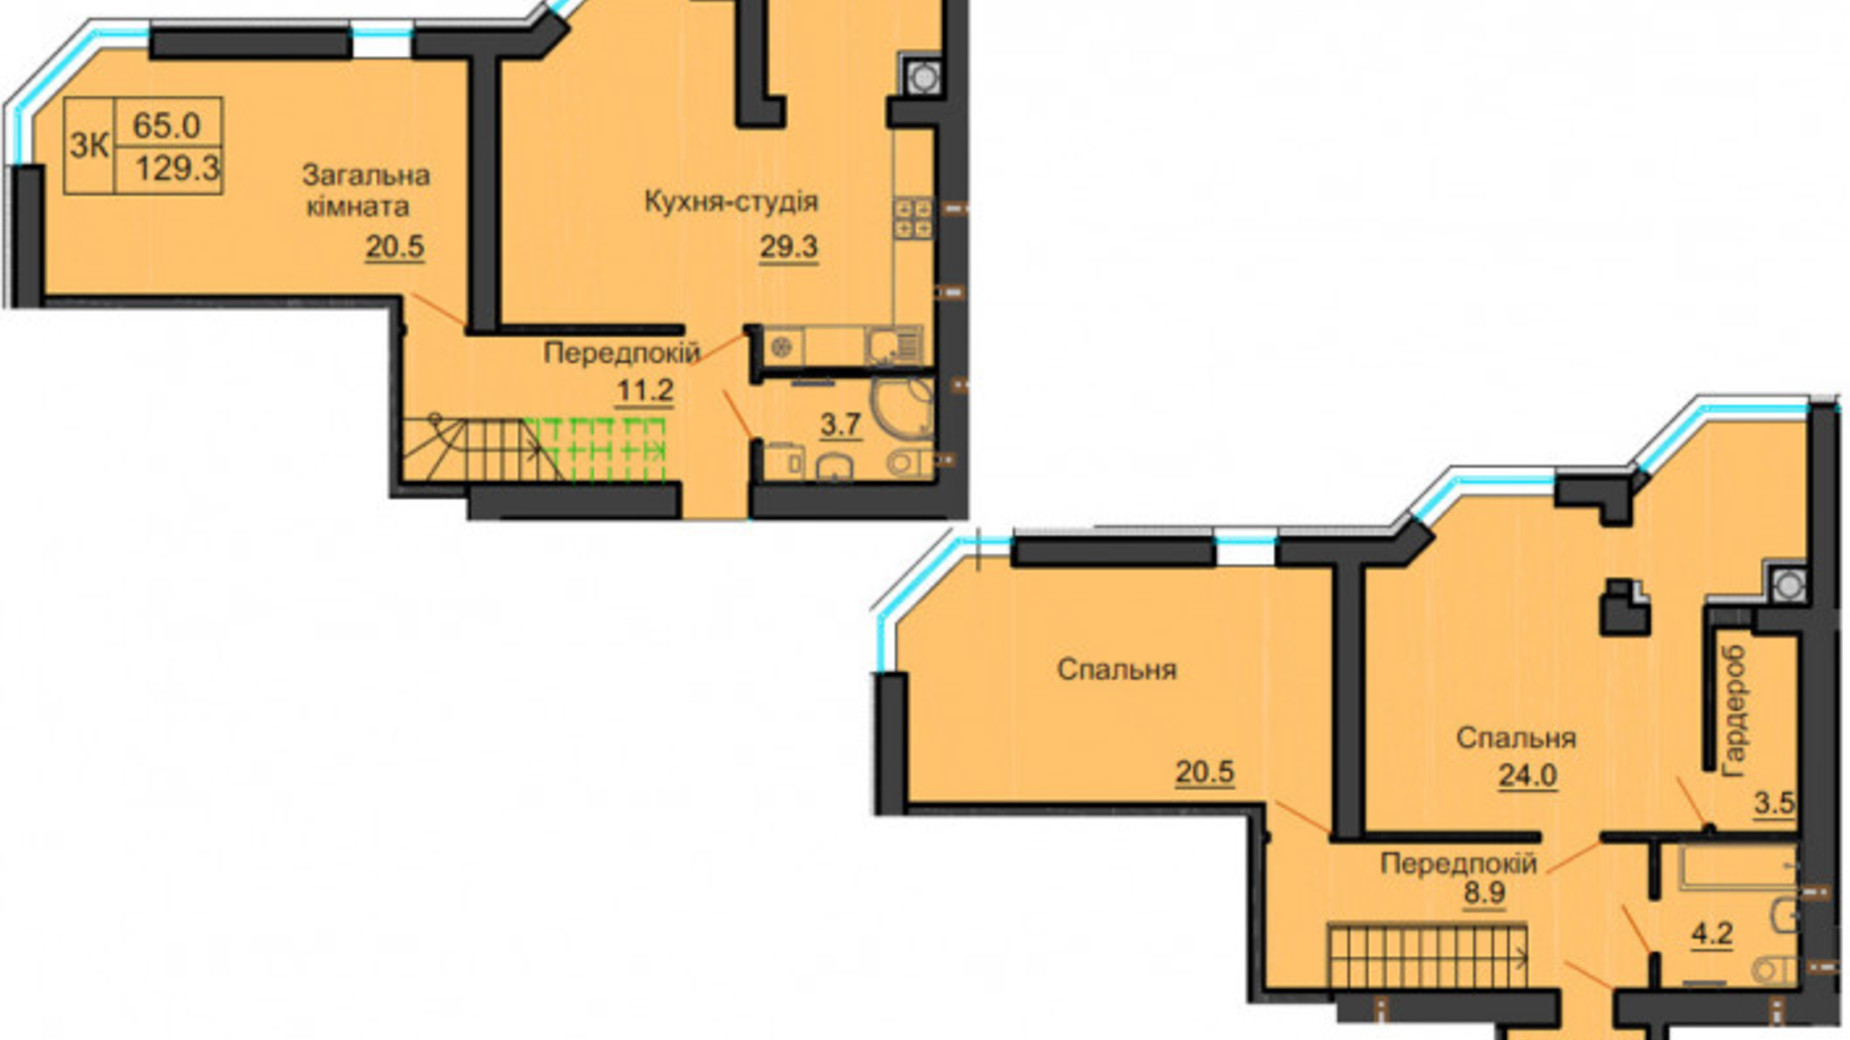 Планировка много­уровневой квартиры в ЖК Sofia Nova 129.3 м², фото 545813